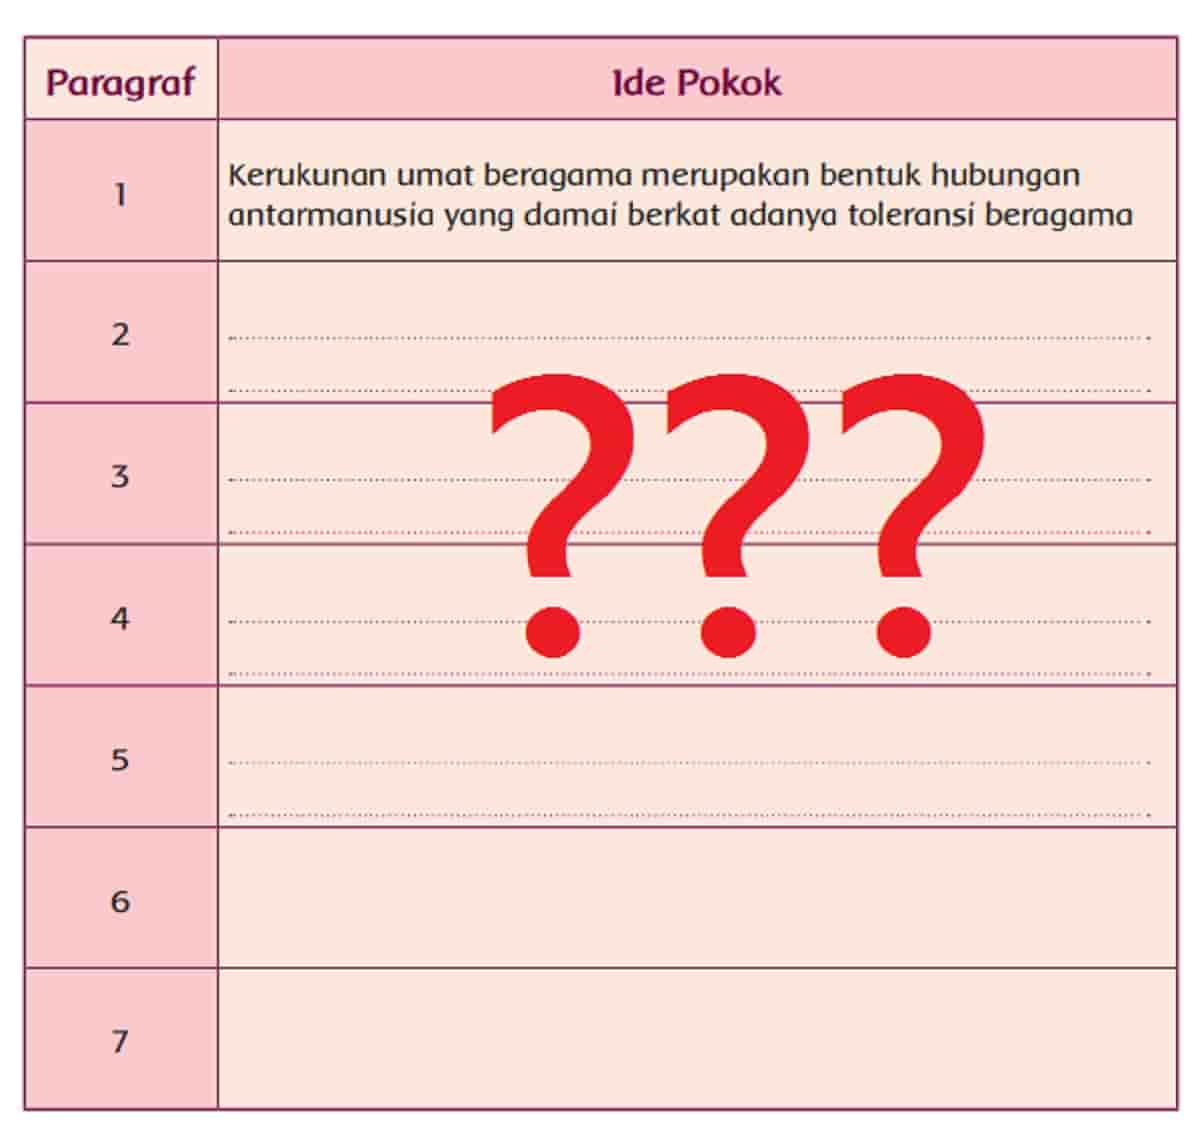 Ide pokok kerukunan umat beragama di Indonesia halaman 83 kelas 5